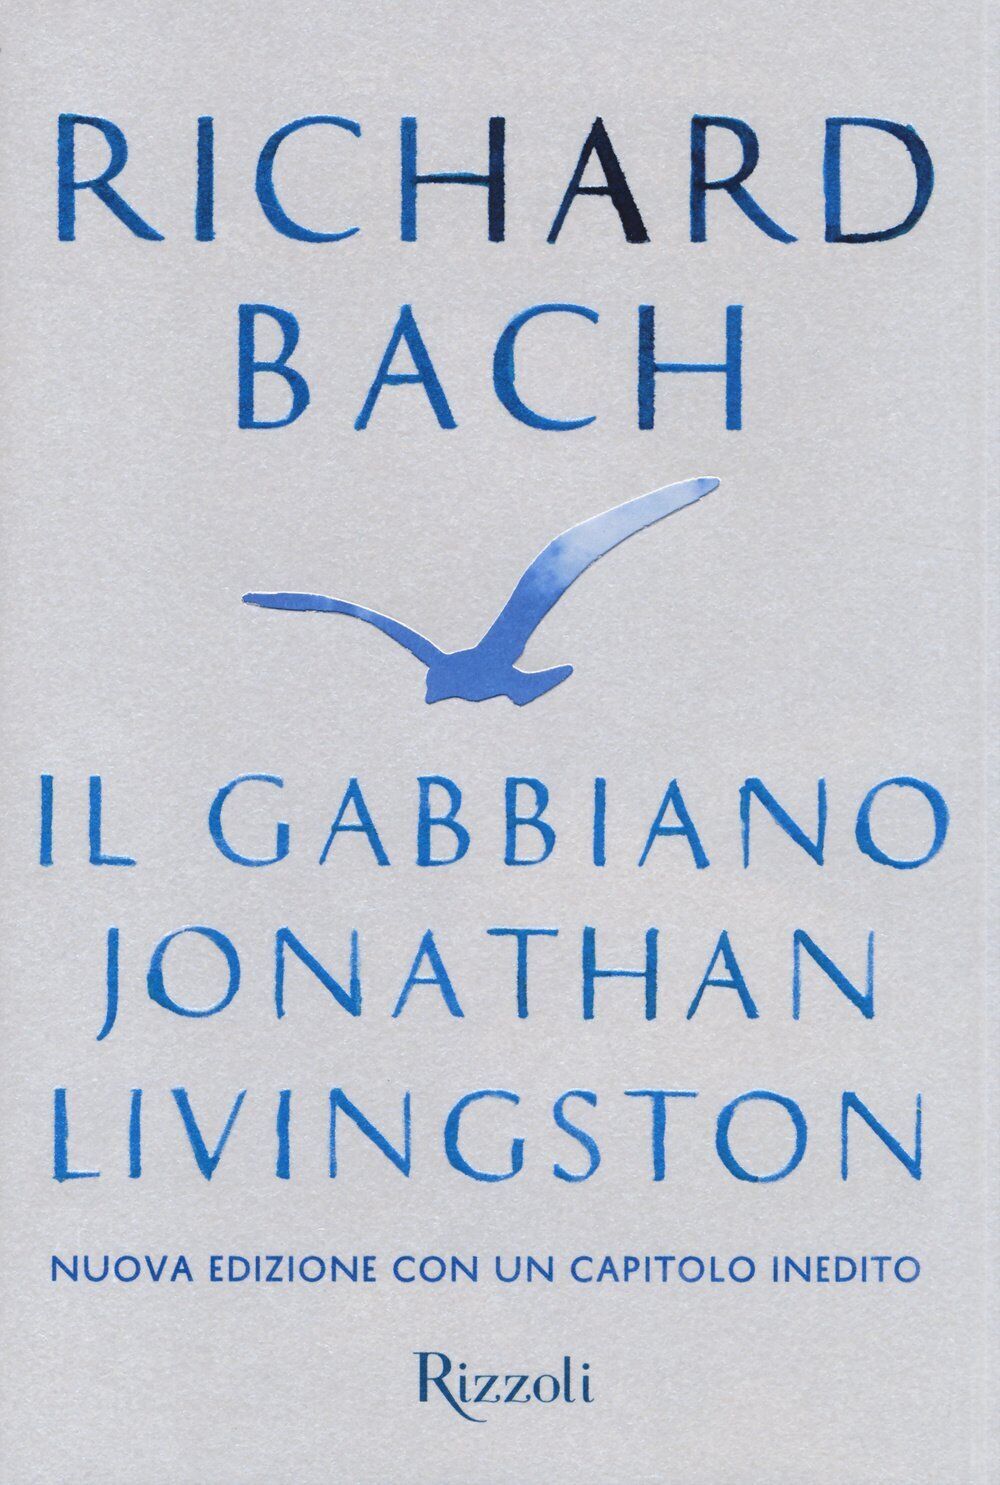 Il gabbiano Jonathan Livingston - Richard Bach - Rizzoli, 2014